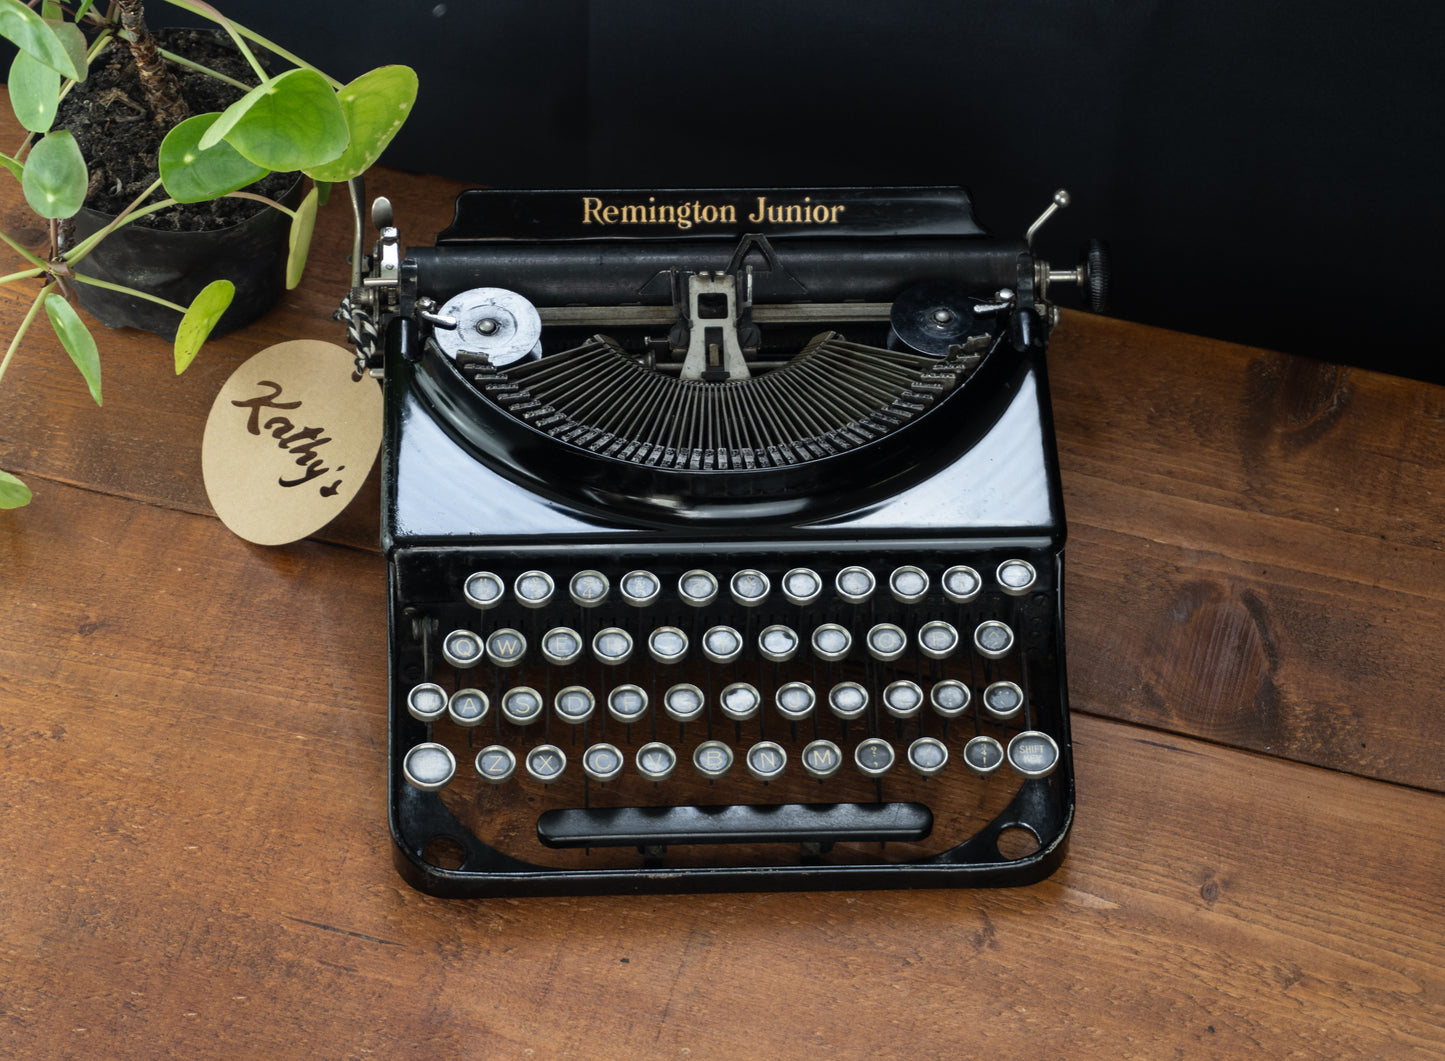 Working Remington Junior typewriter